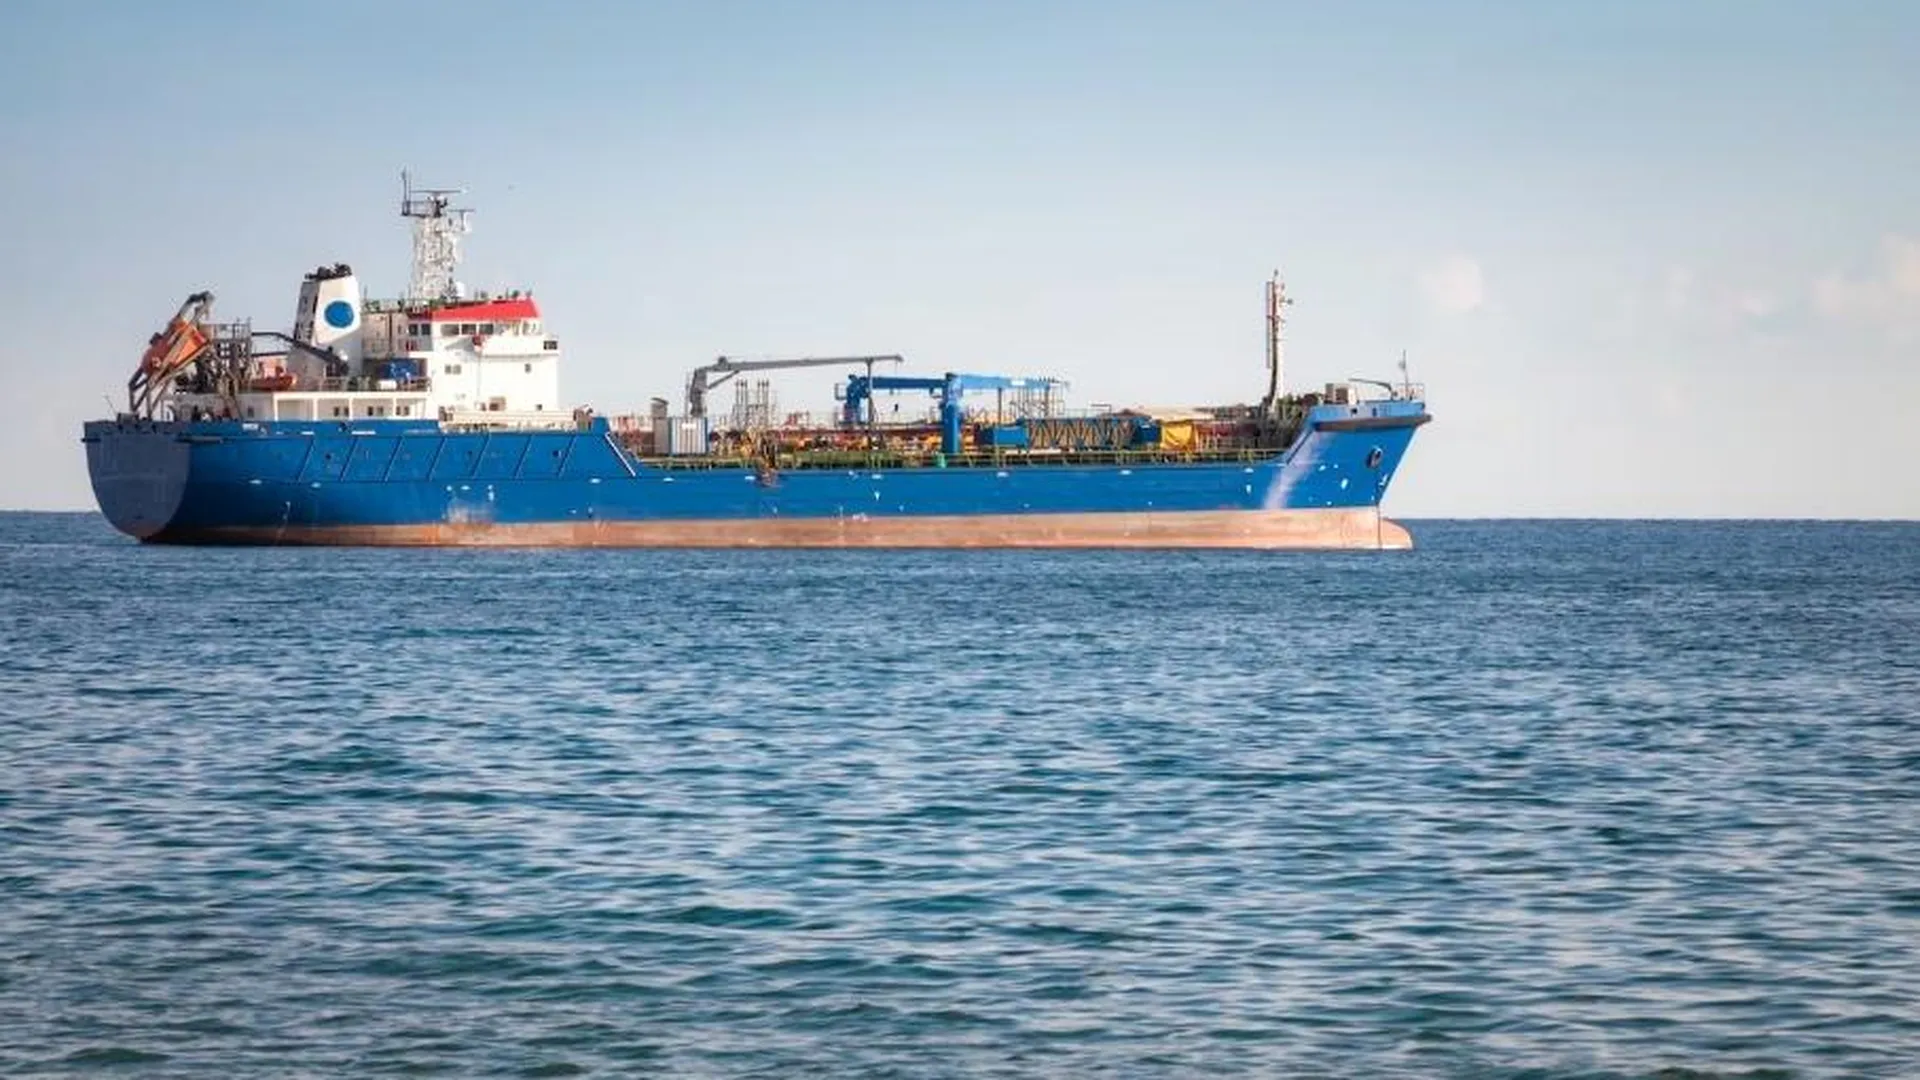 МЧС сообщило о ликвидации пожара на грузовом судне в порту Архангельска